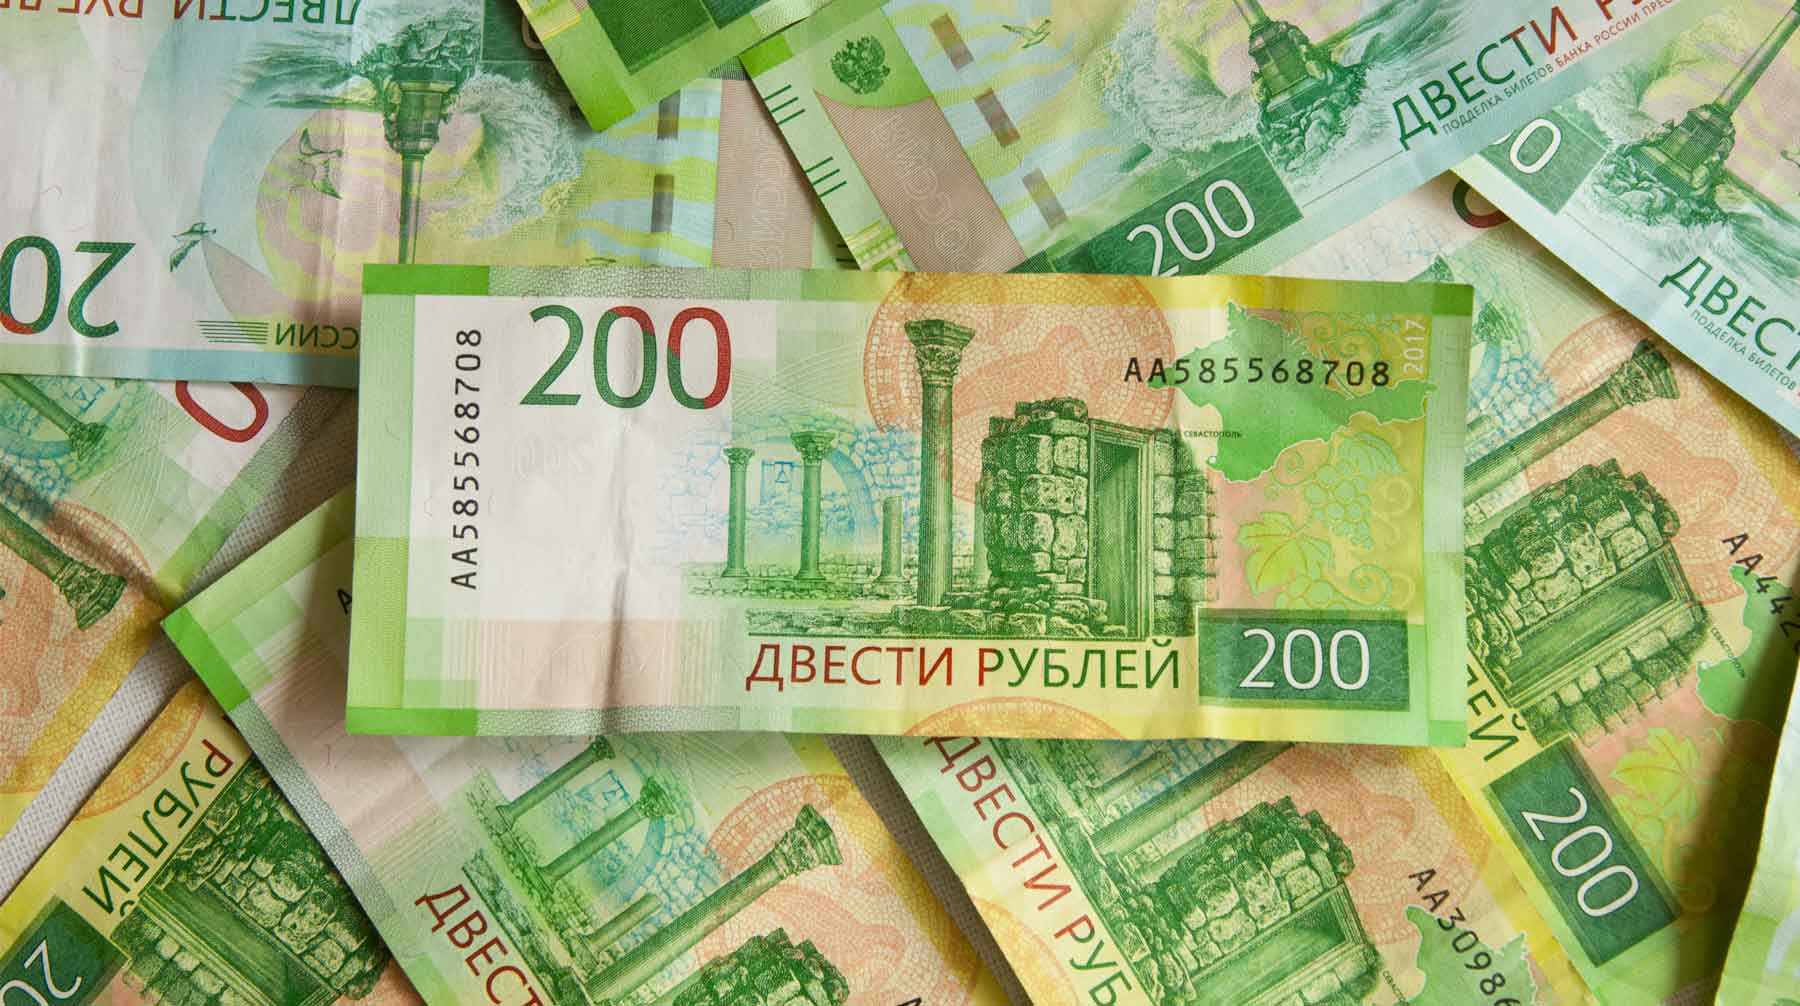 200 Рублей